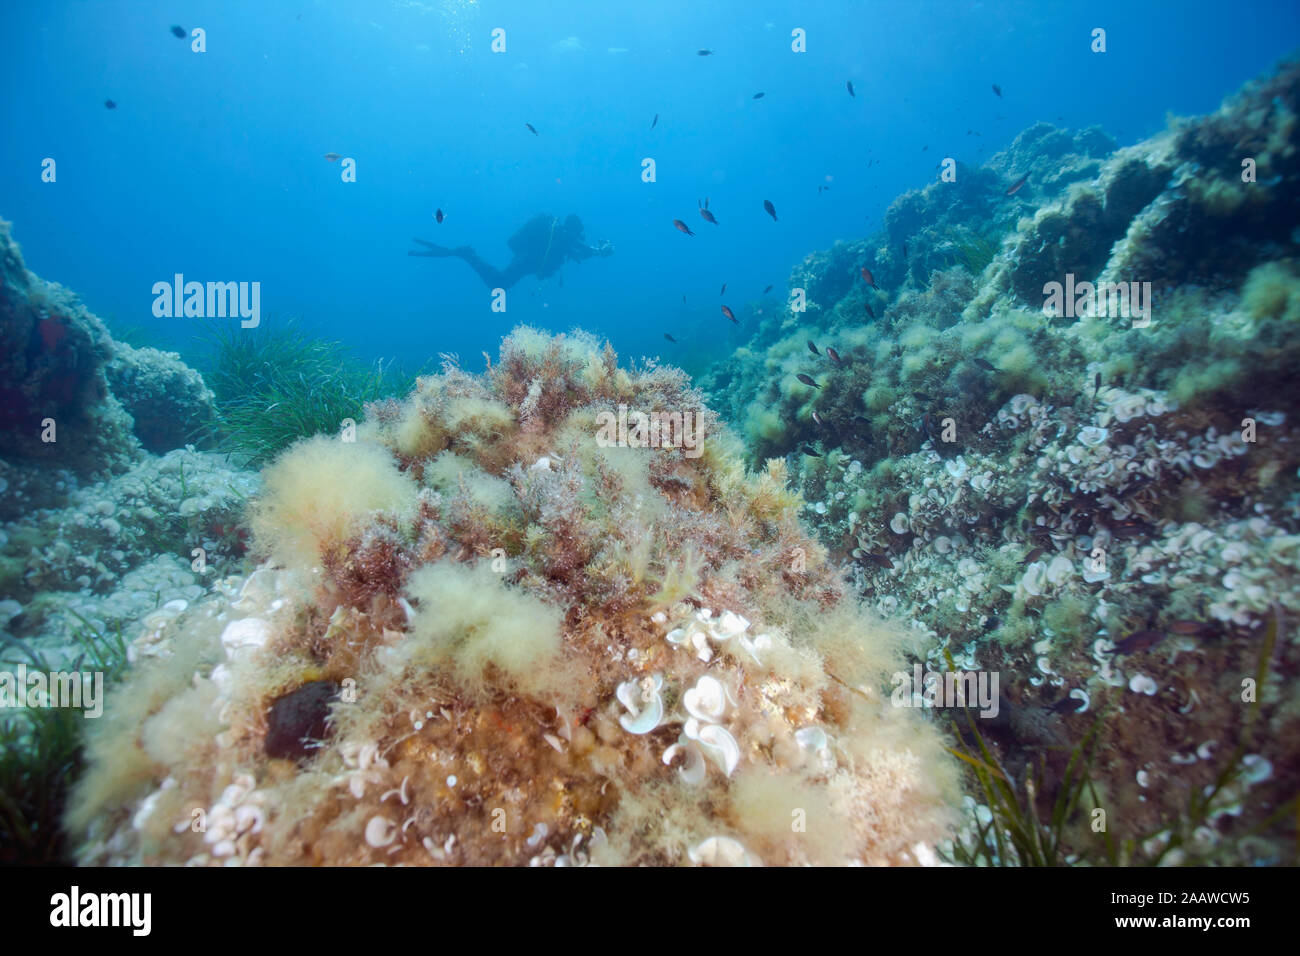 Frankreich, Korsika, Sagone, Unterwasser Blick auf Scuba diver Erkundung reef Stockfoto